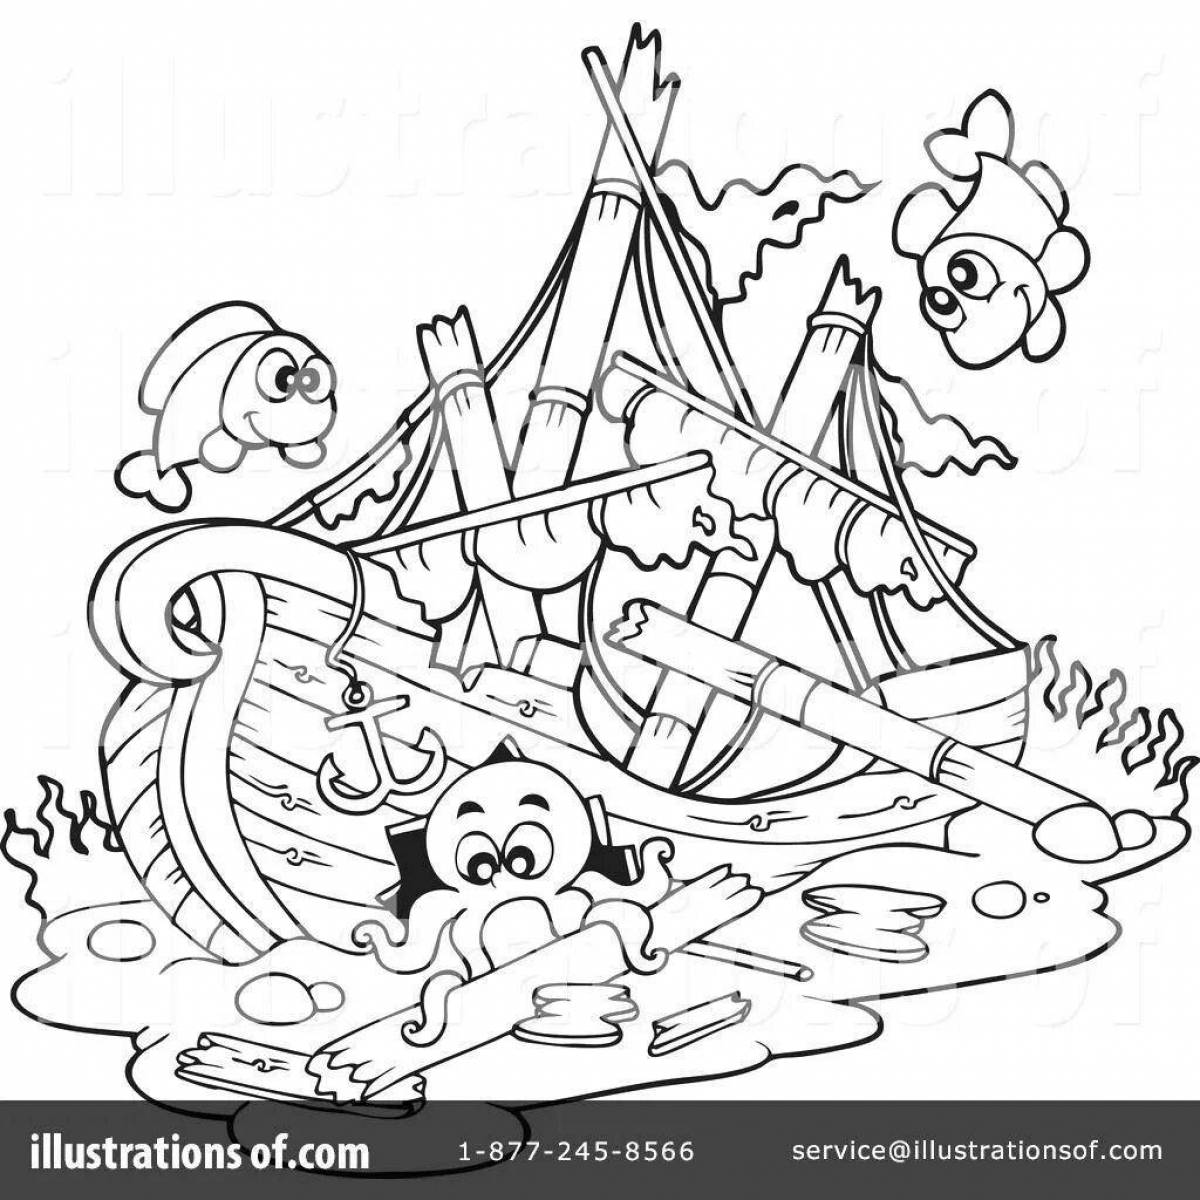 Mystical coloring shipwreck